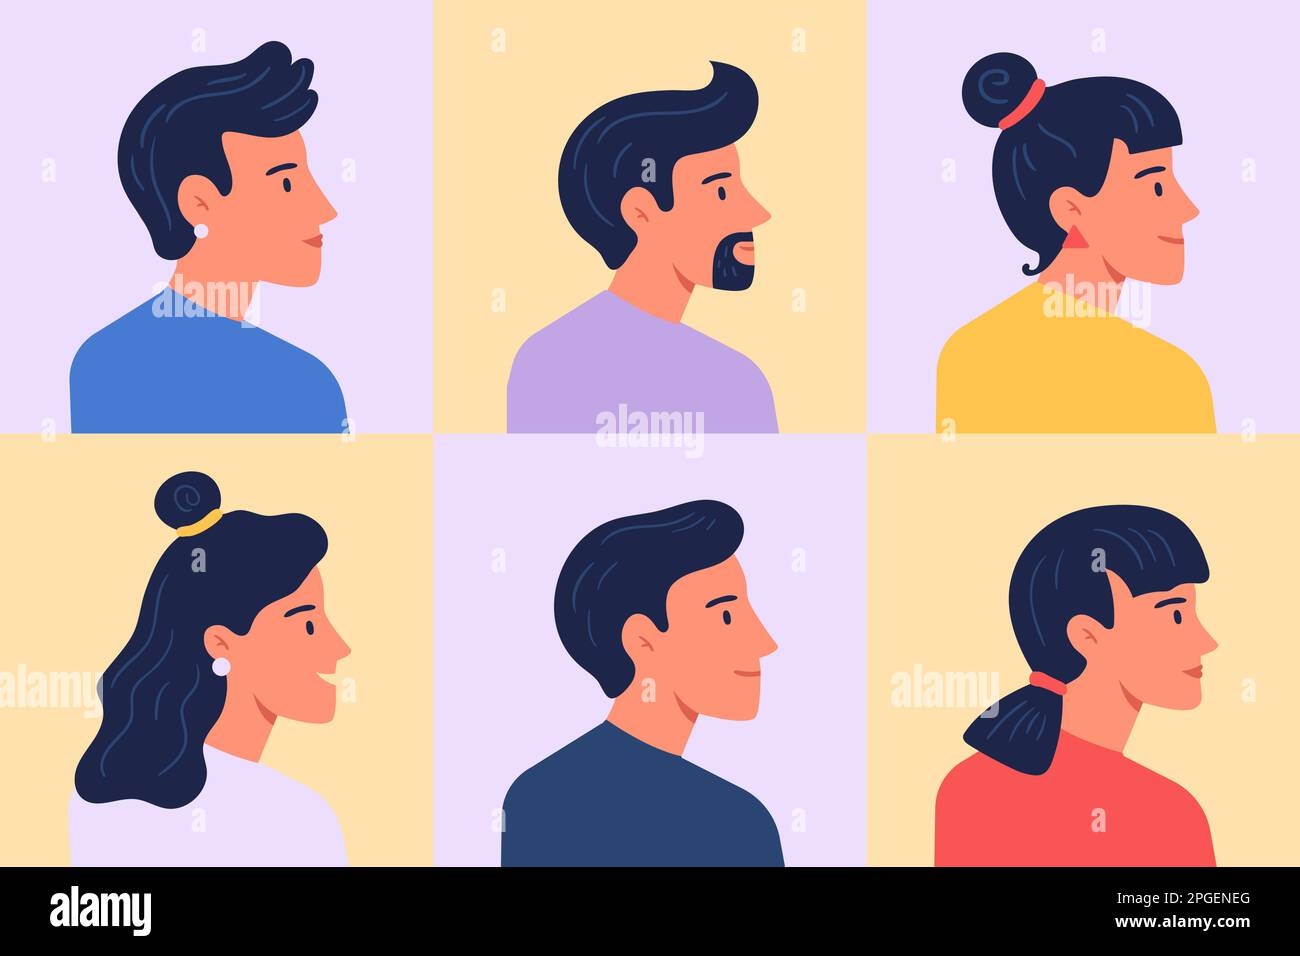 Profilporträts. Avatare weiblich und männlich, Frau und Mann, Darstellungsvektor des Kopfgesichts des weiblichen Personenprofils, männlich und weiblich Stock Vektor